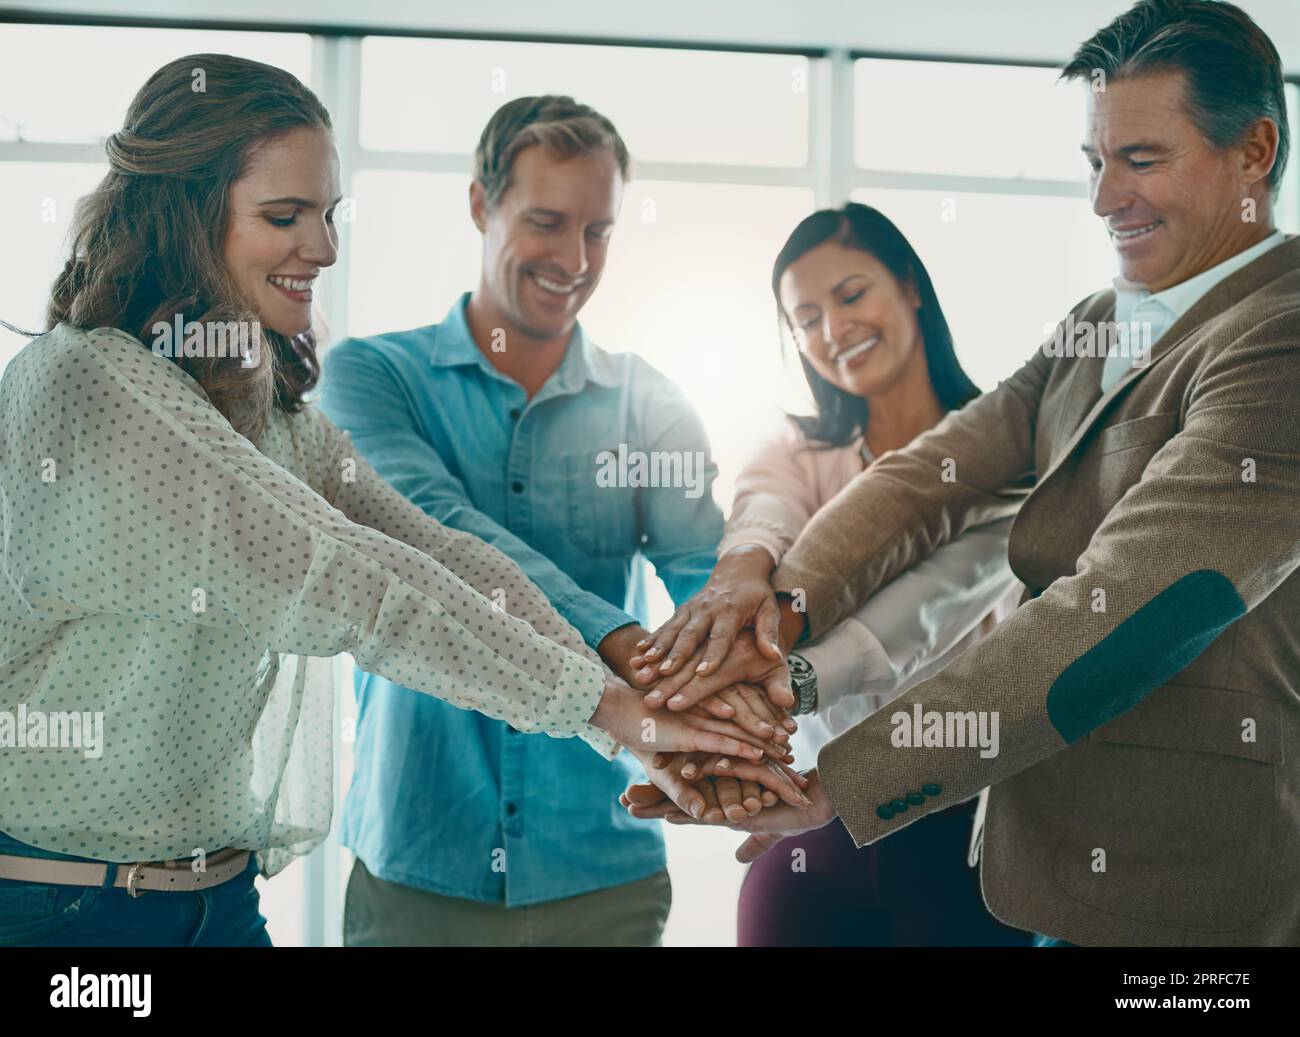 Wir werden das zum Erfolg machen: Eine motivierte Gruppe von Geschäftsleuten, die mit den Händen im Büro stehen. Stockfoto